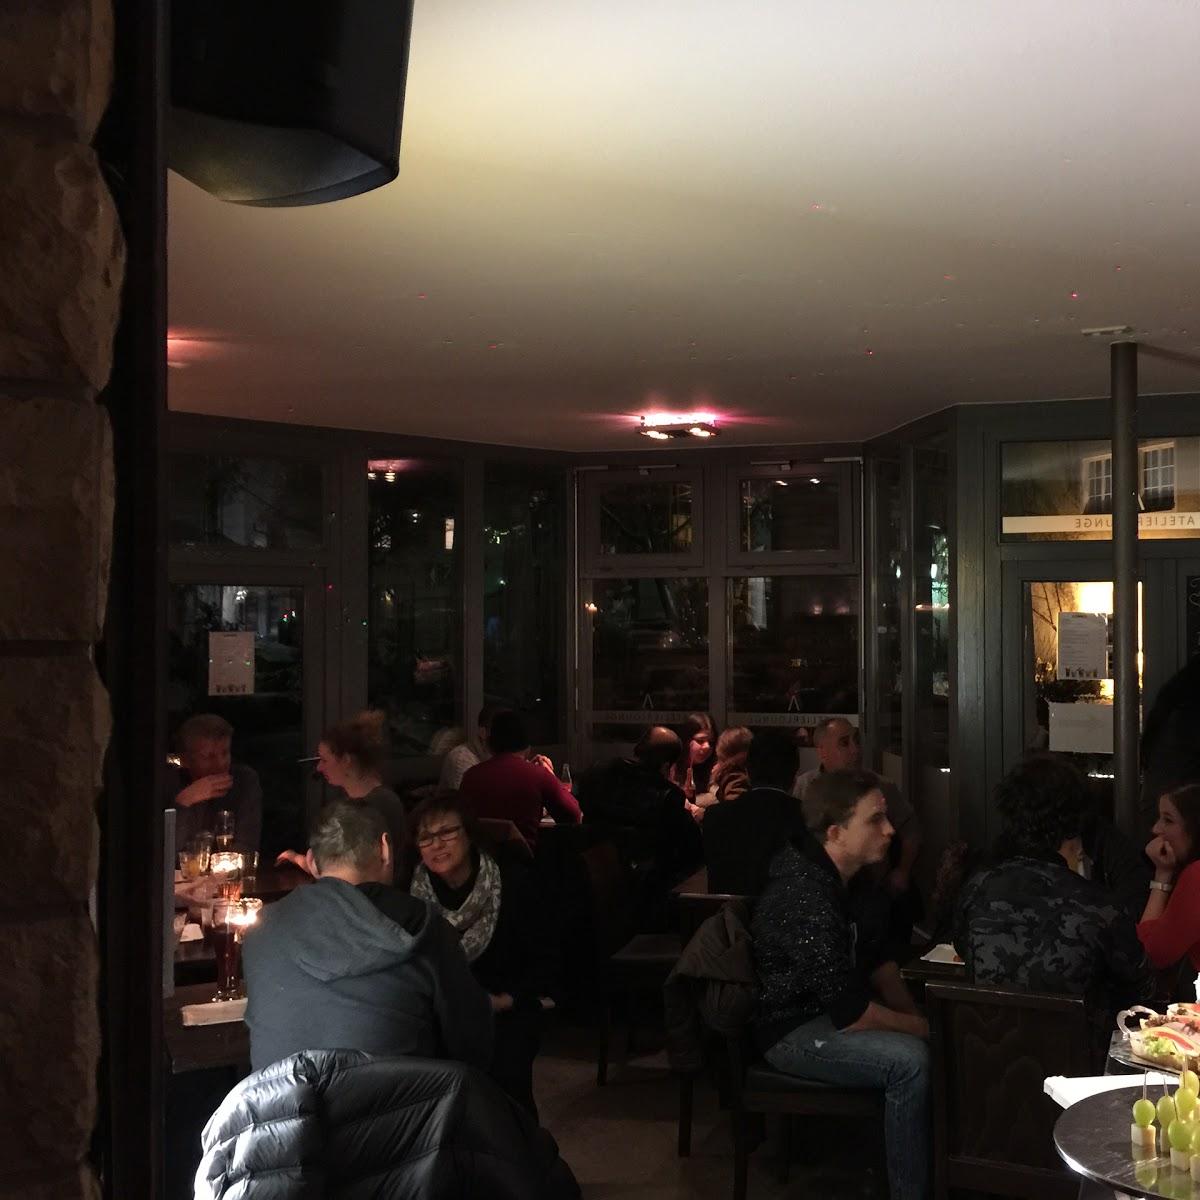 Restaurant "Atelier Café Bar Bistro" in Geislingen an der Steige